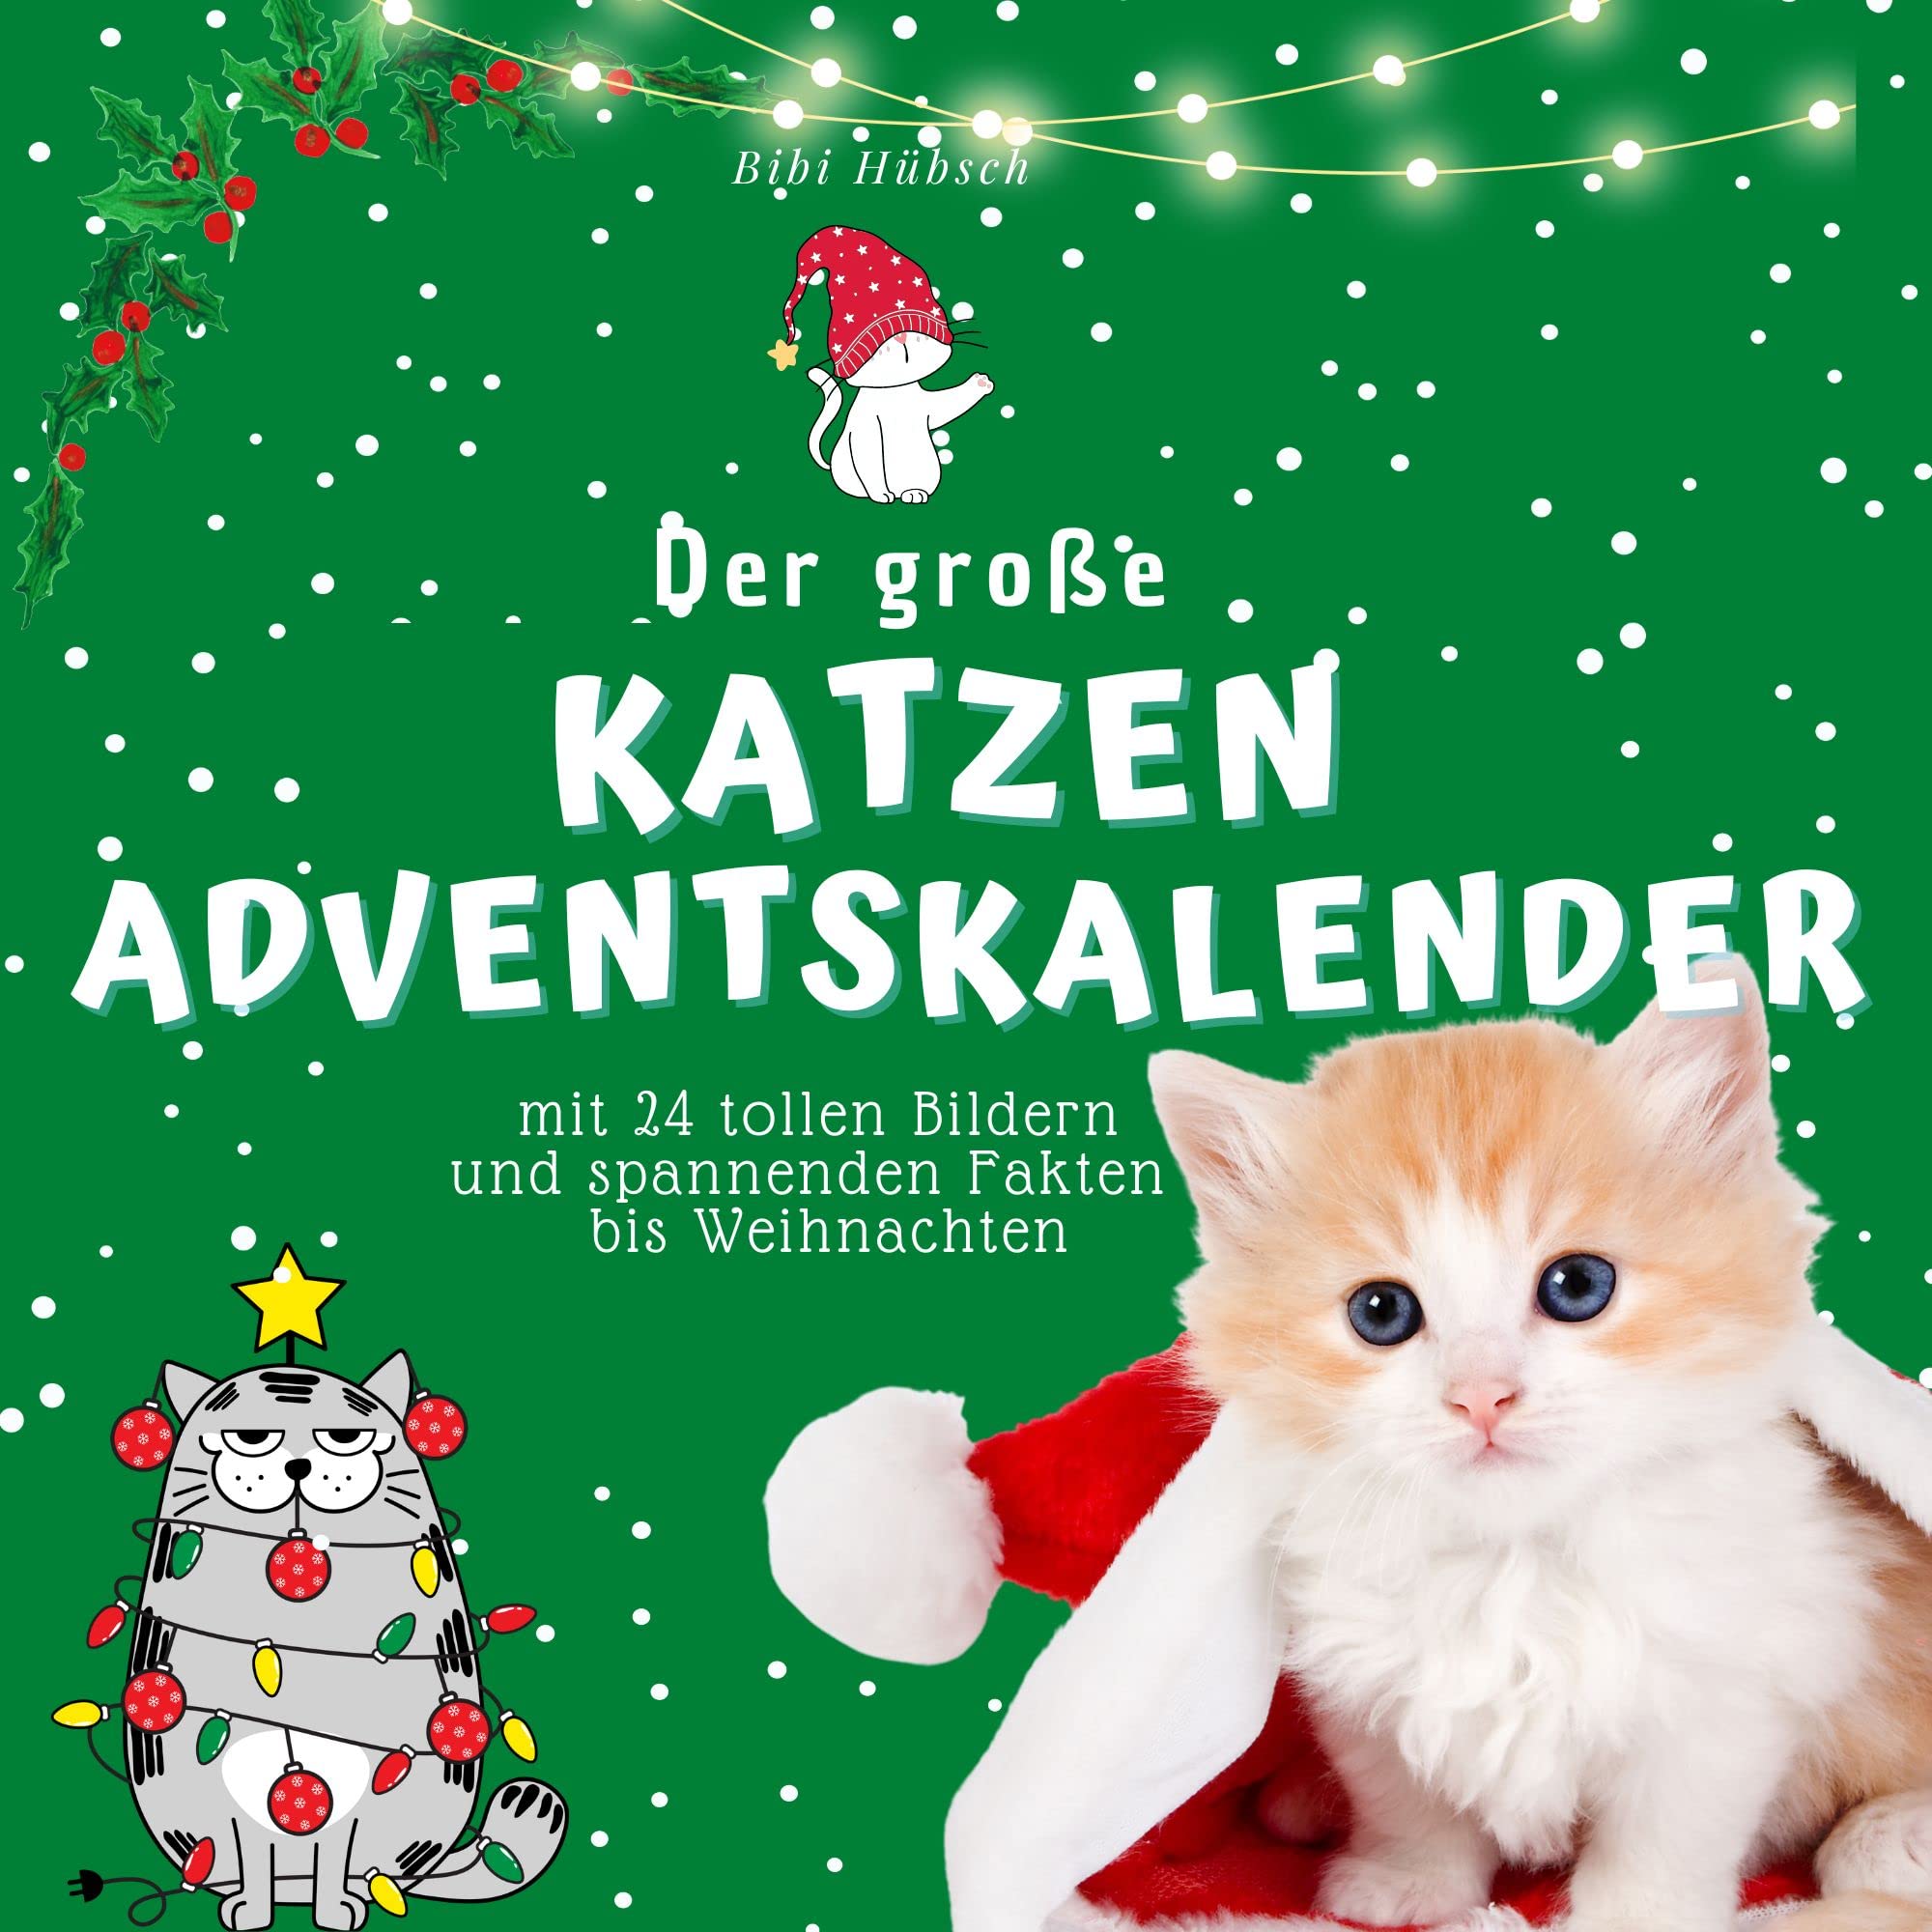 Der grosse Katzen-Adventskalender: mit 24 tollen Bildern und spannenden Fakten bis Weihnachten